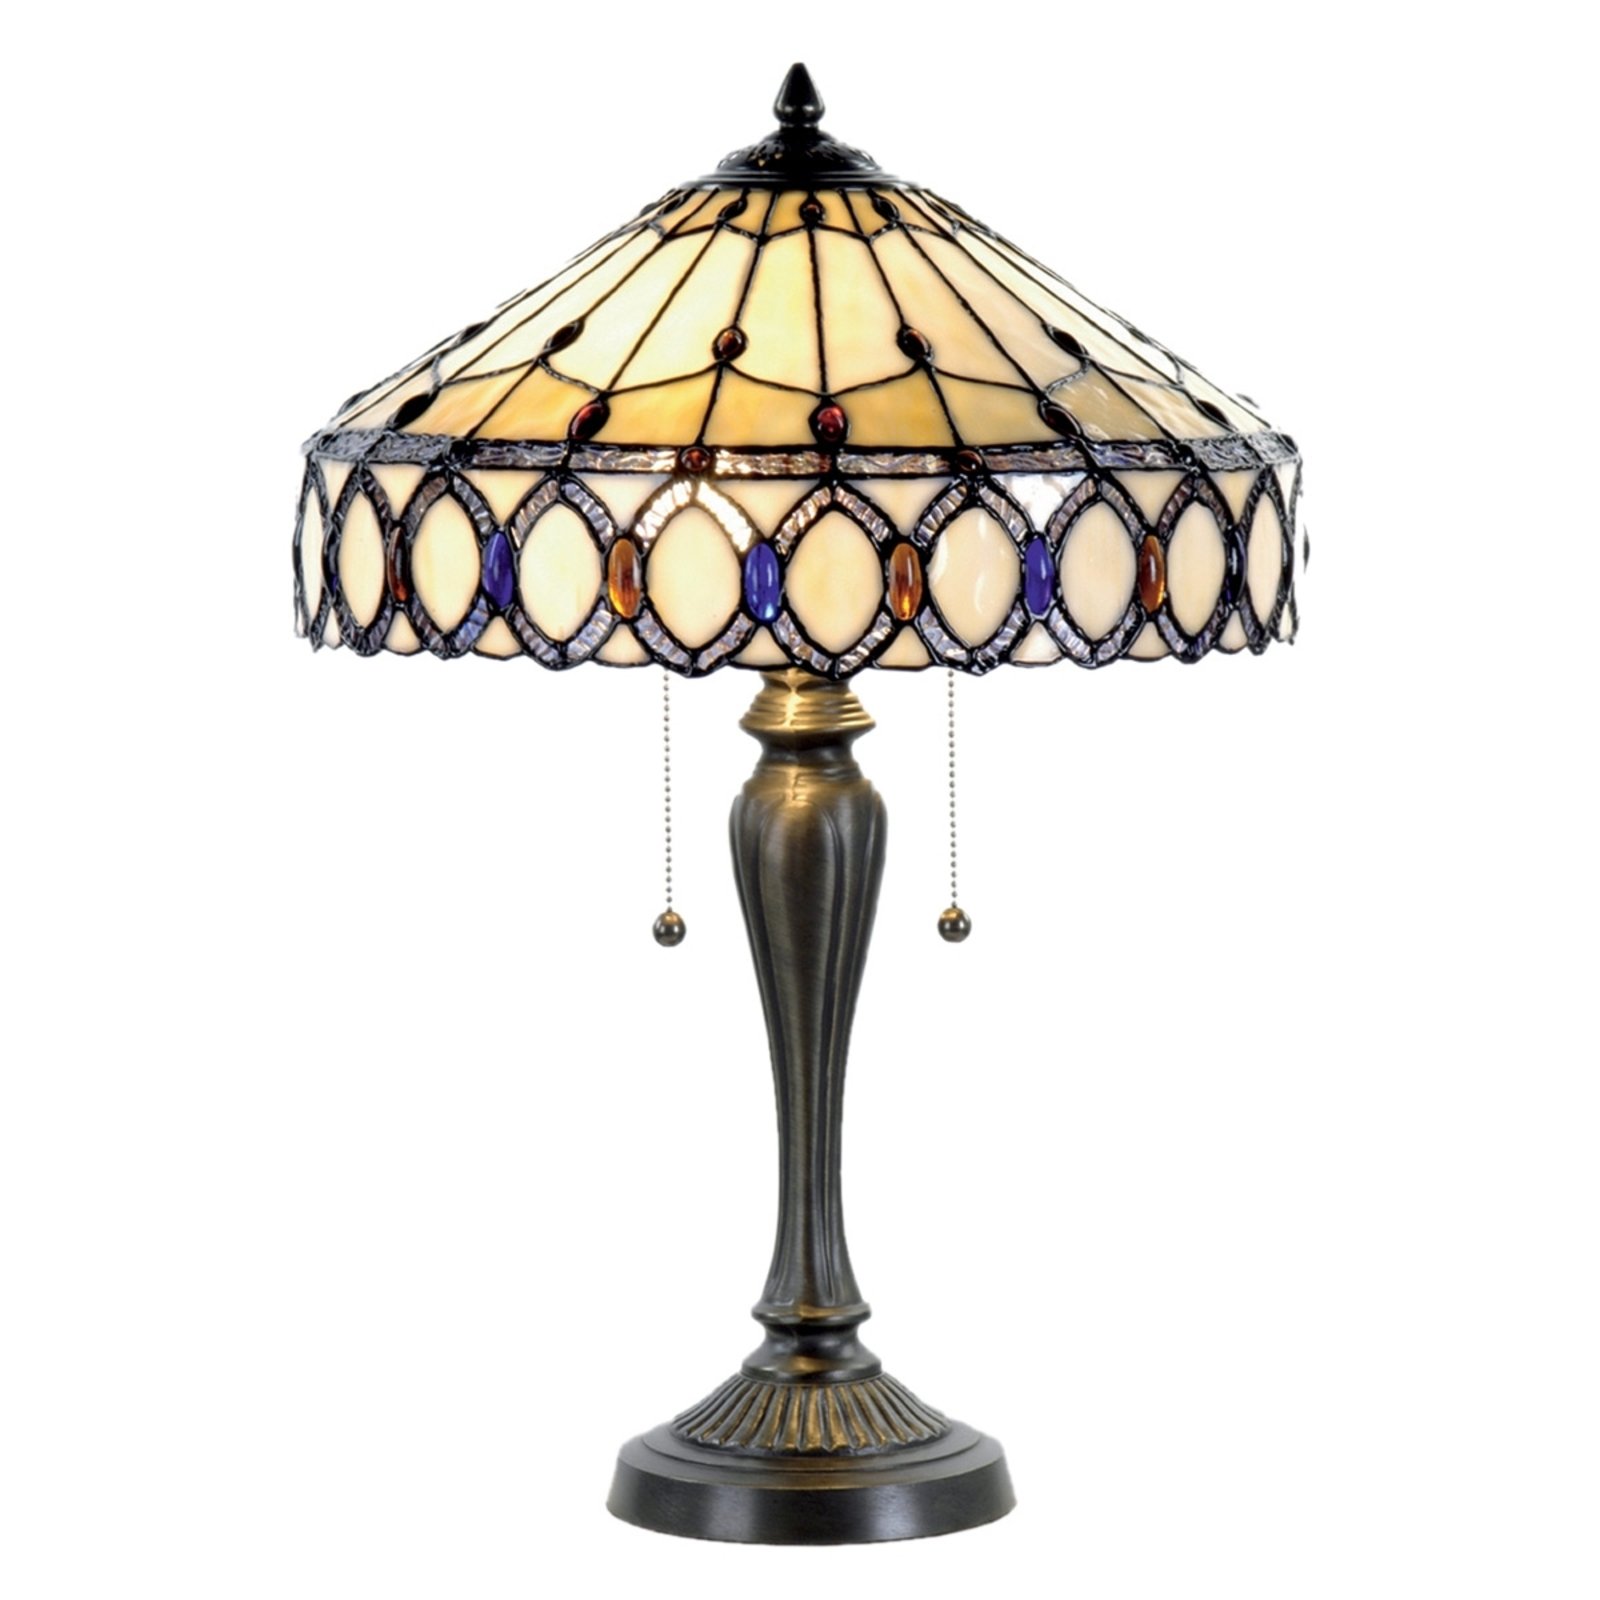 Fiera stolna lampa u Tiffany stilu